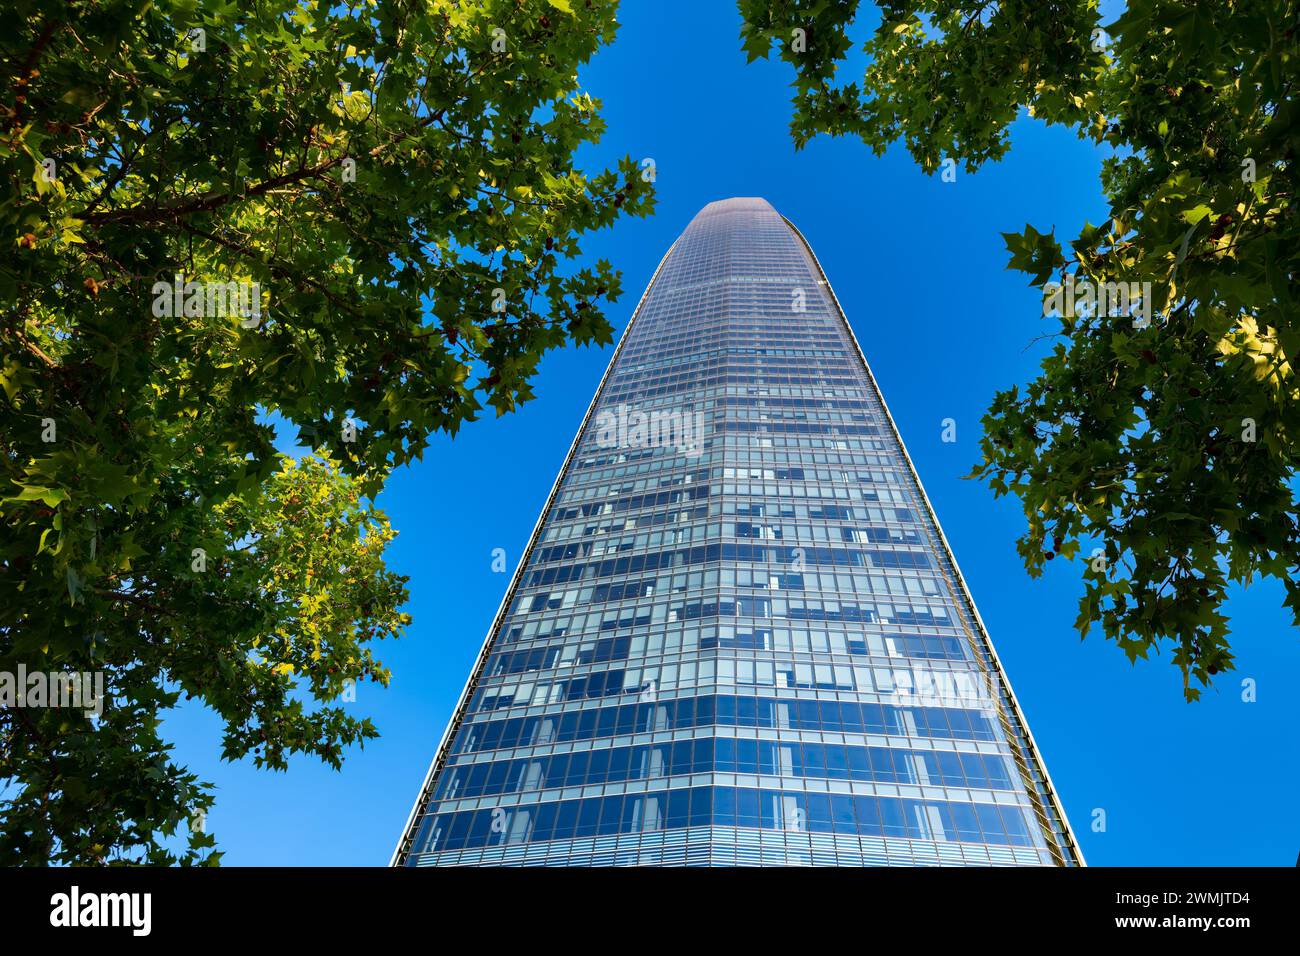 Vue sur Gran Torre Santiago, le plus haut bâtiment d'Amérique latine, un gratte-ciel de 64 étages qui fait partie du Costanera Center. Banque D'Images